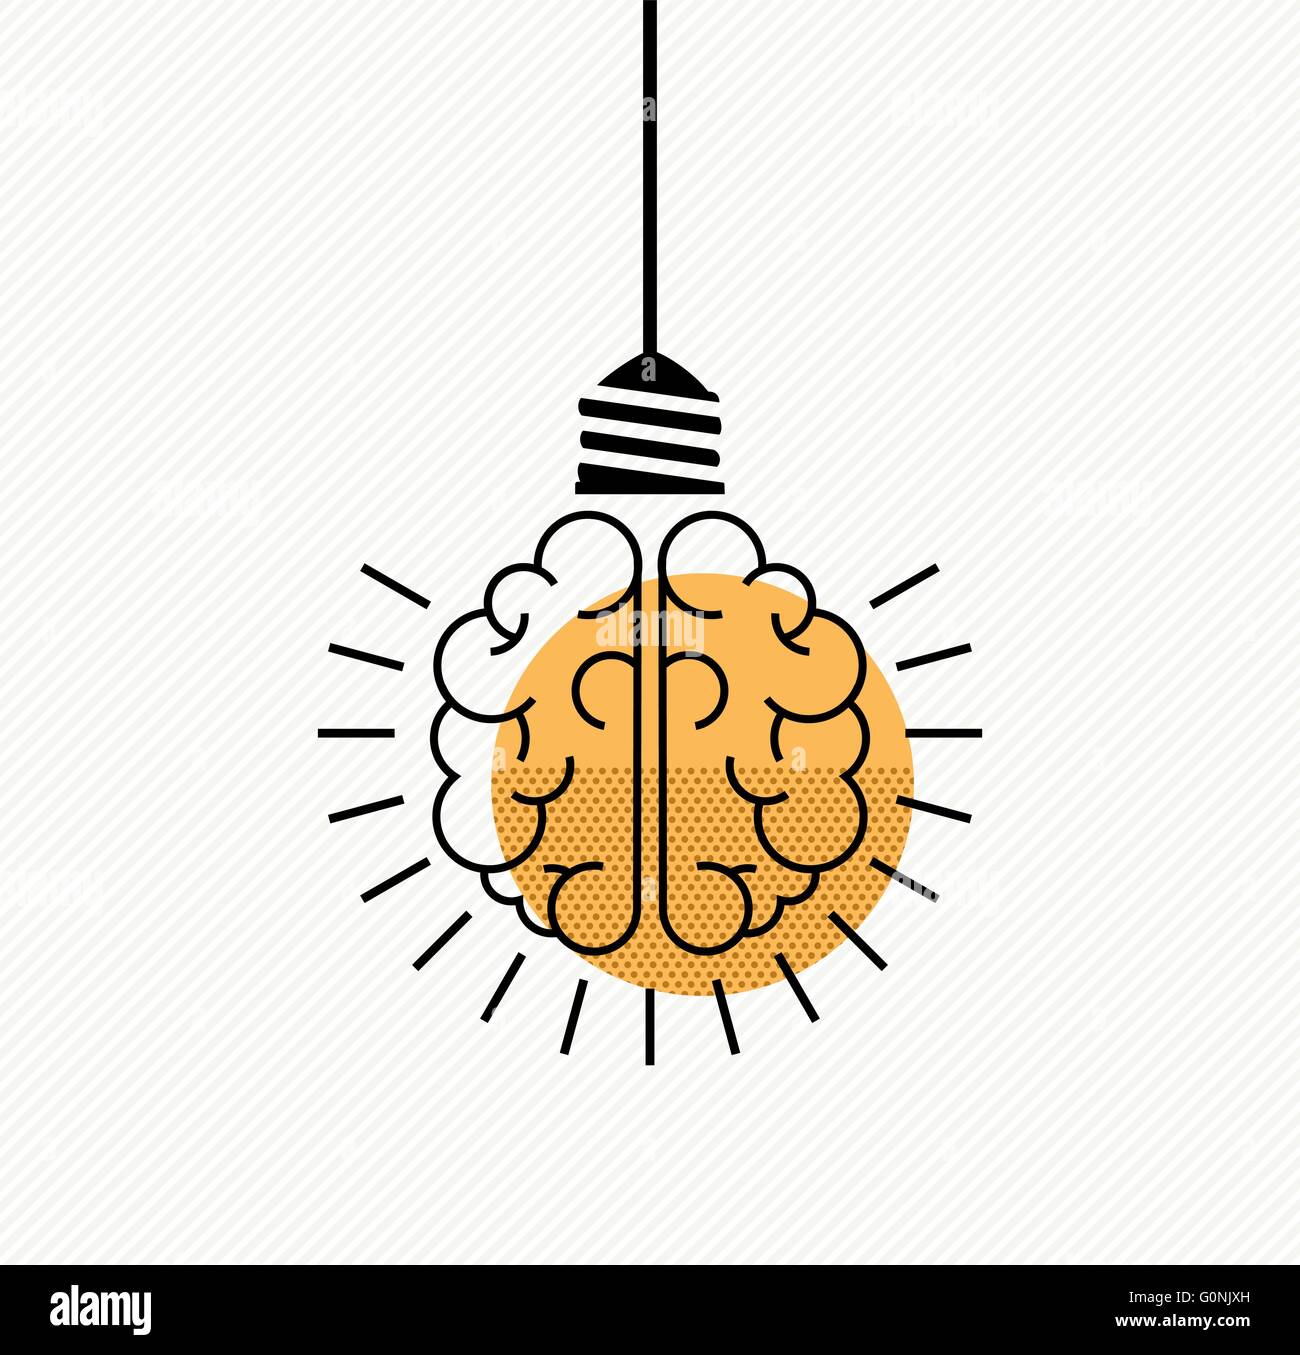 Geniale Ideen einfache Konzeption. Menschliche Gehirn als Glühbirne Lampe in klaren, modernen Kunst Linienstil. EPS10 Vektor. Stock Vektor